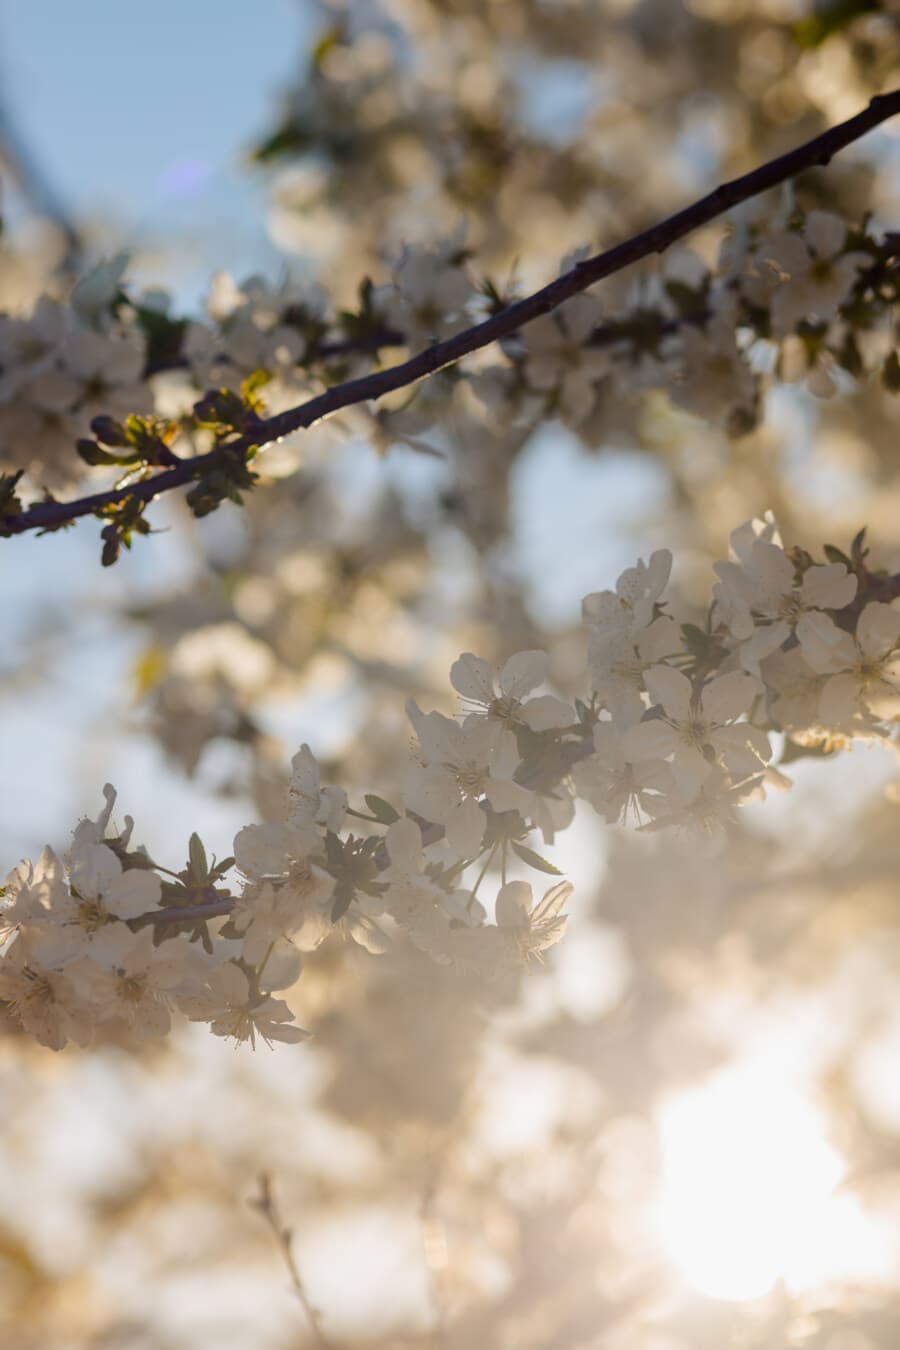 proljetno vrijeme, sunčano, cvatnje trešnje, sunčano, grane, voćka, bijeli cvijet, suncevi zraci, pozadinsko svijetlo, proljeće